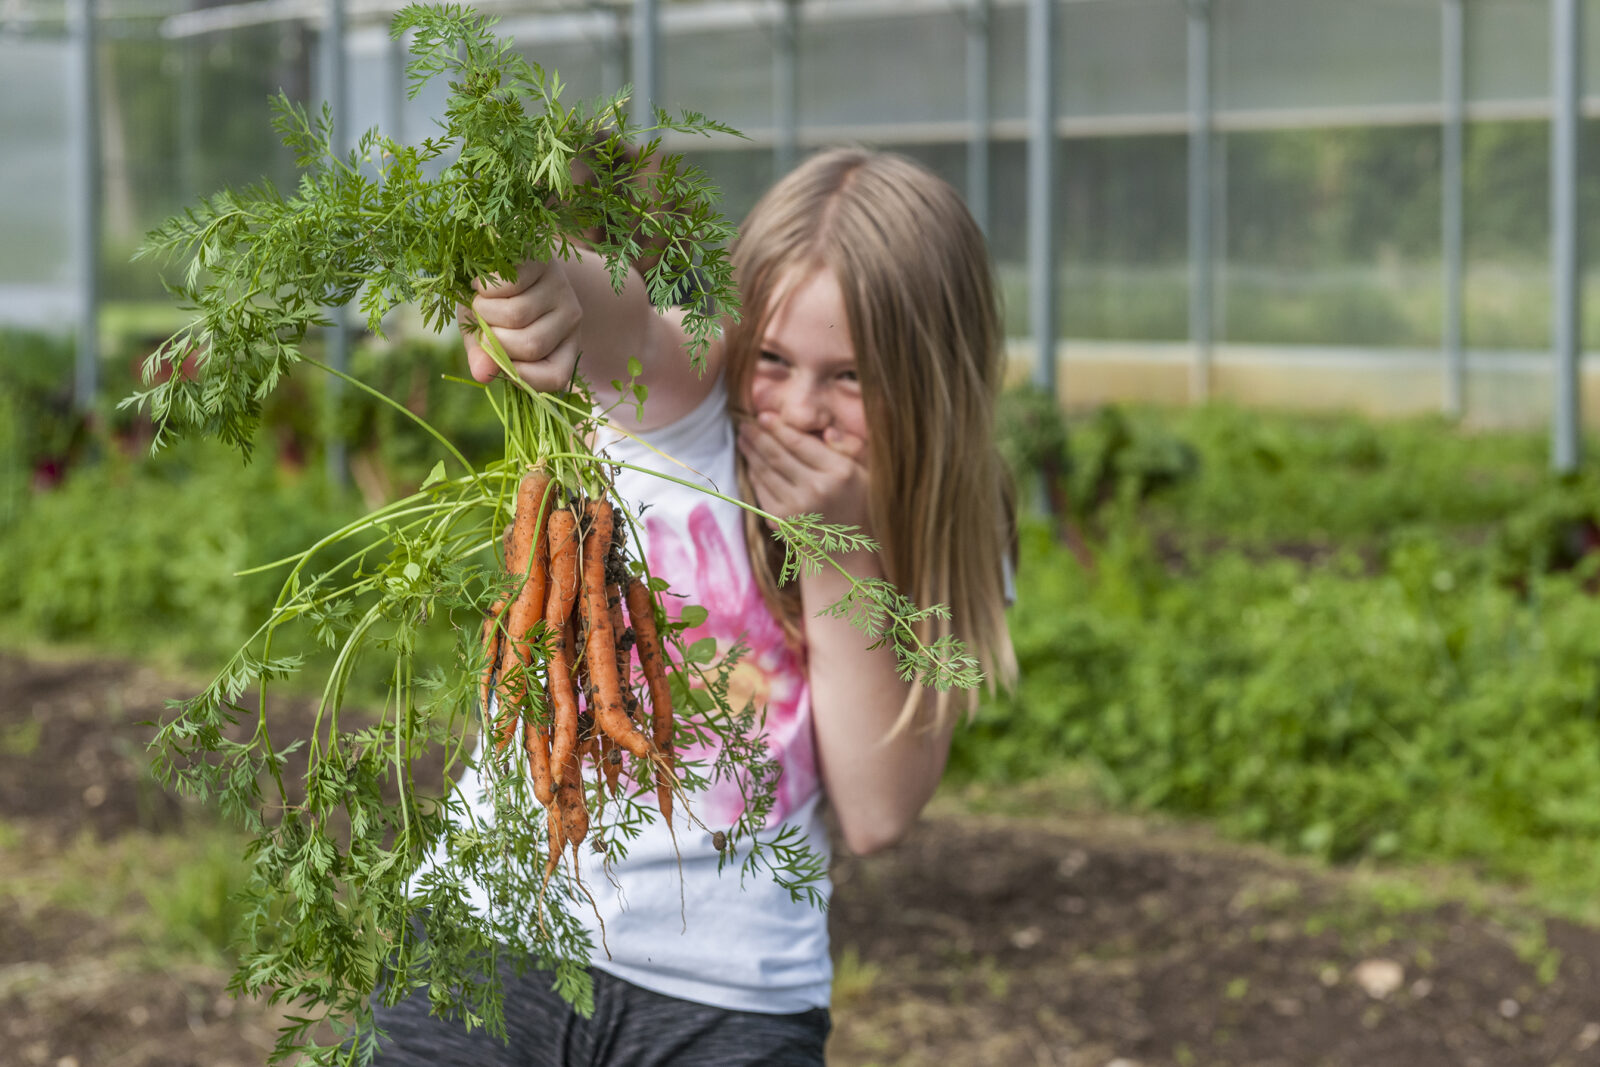 Karottenernte im Bildungsprogramm "Schule & Landwirtschaft"
© Christoph Merian Stiftung, Kathrin Schulthess